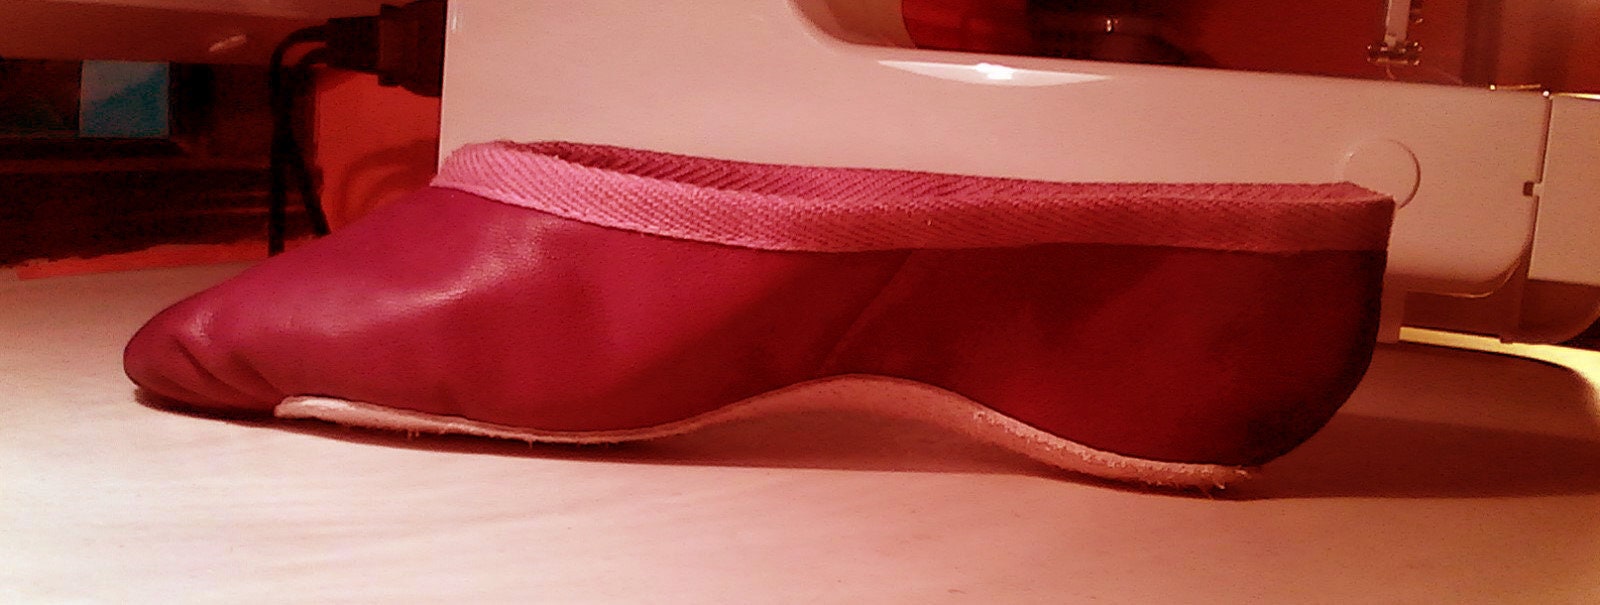 Deep Cherry rosso in pelle balletto scarpe-suola completa-adulti taglie Scarpe Calzature donna Scarpe senza lacci Scarpette da ballo e ballerine 